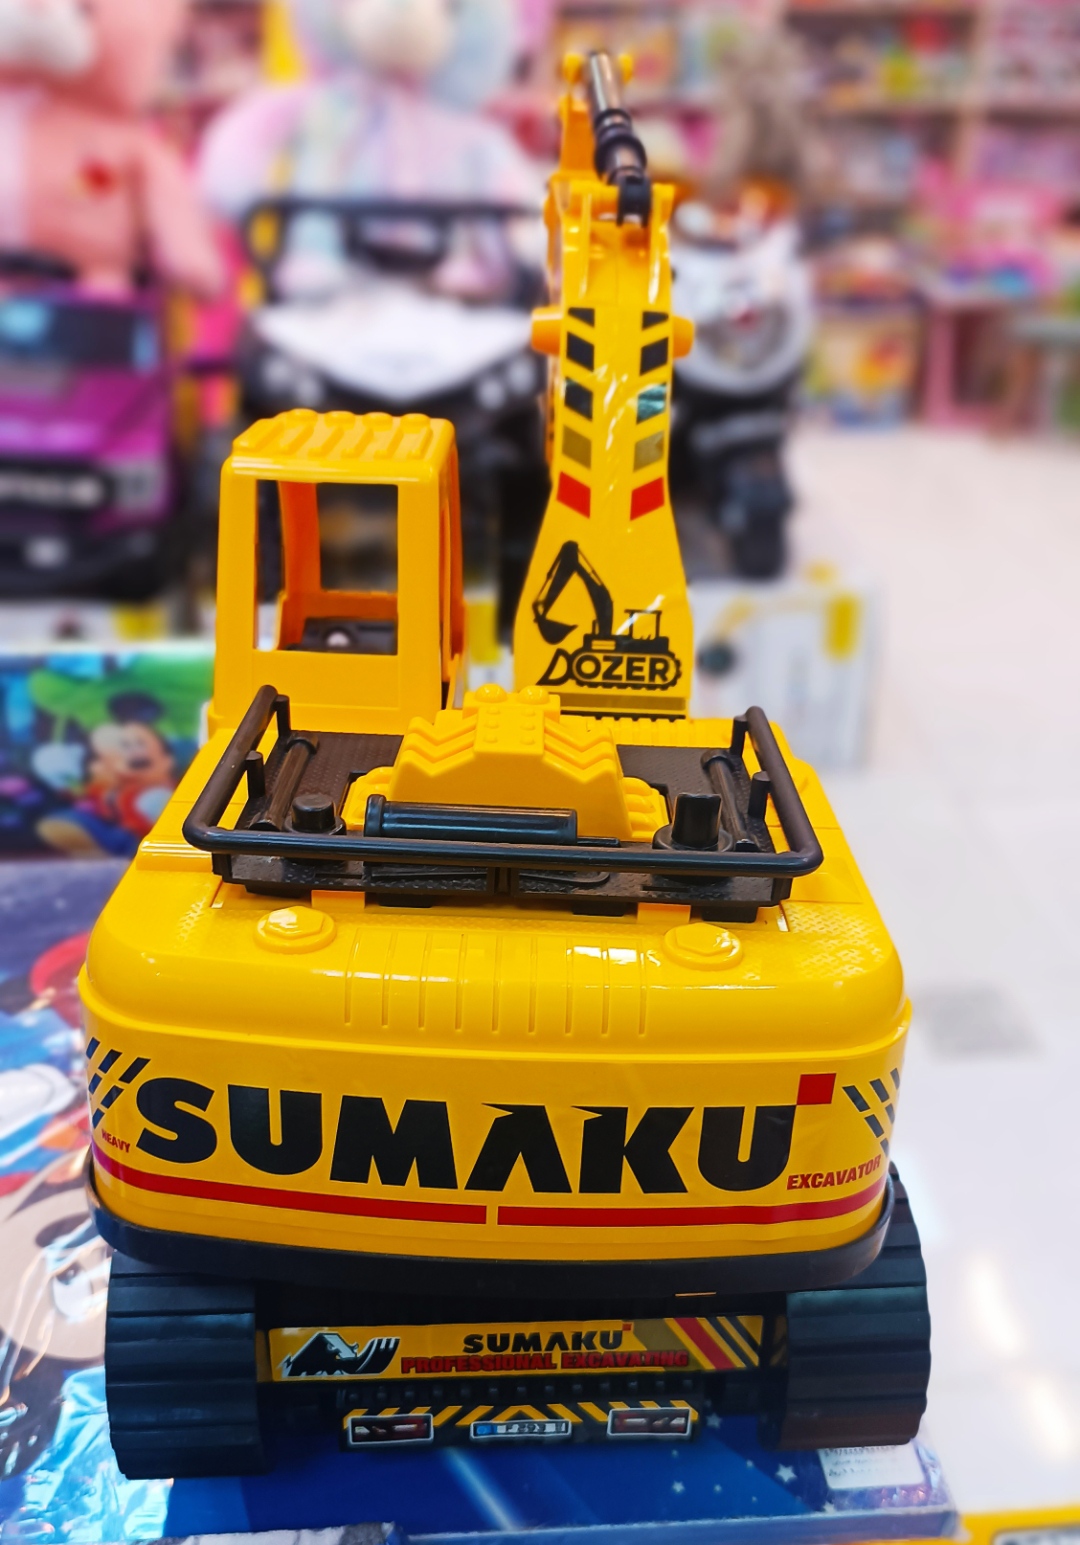 بیل مکانیکی کوماتسو اسباب بازی درج توی Dorj Toy